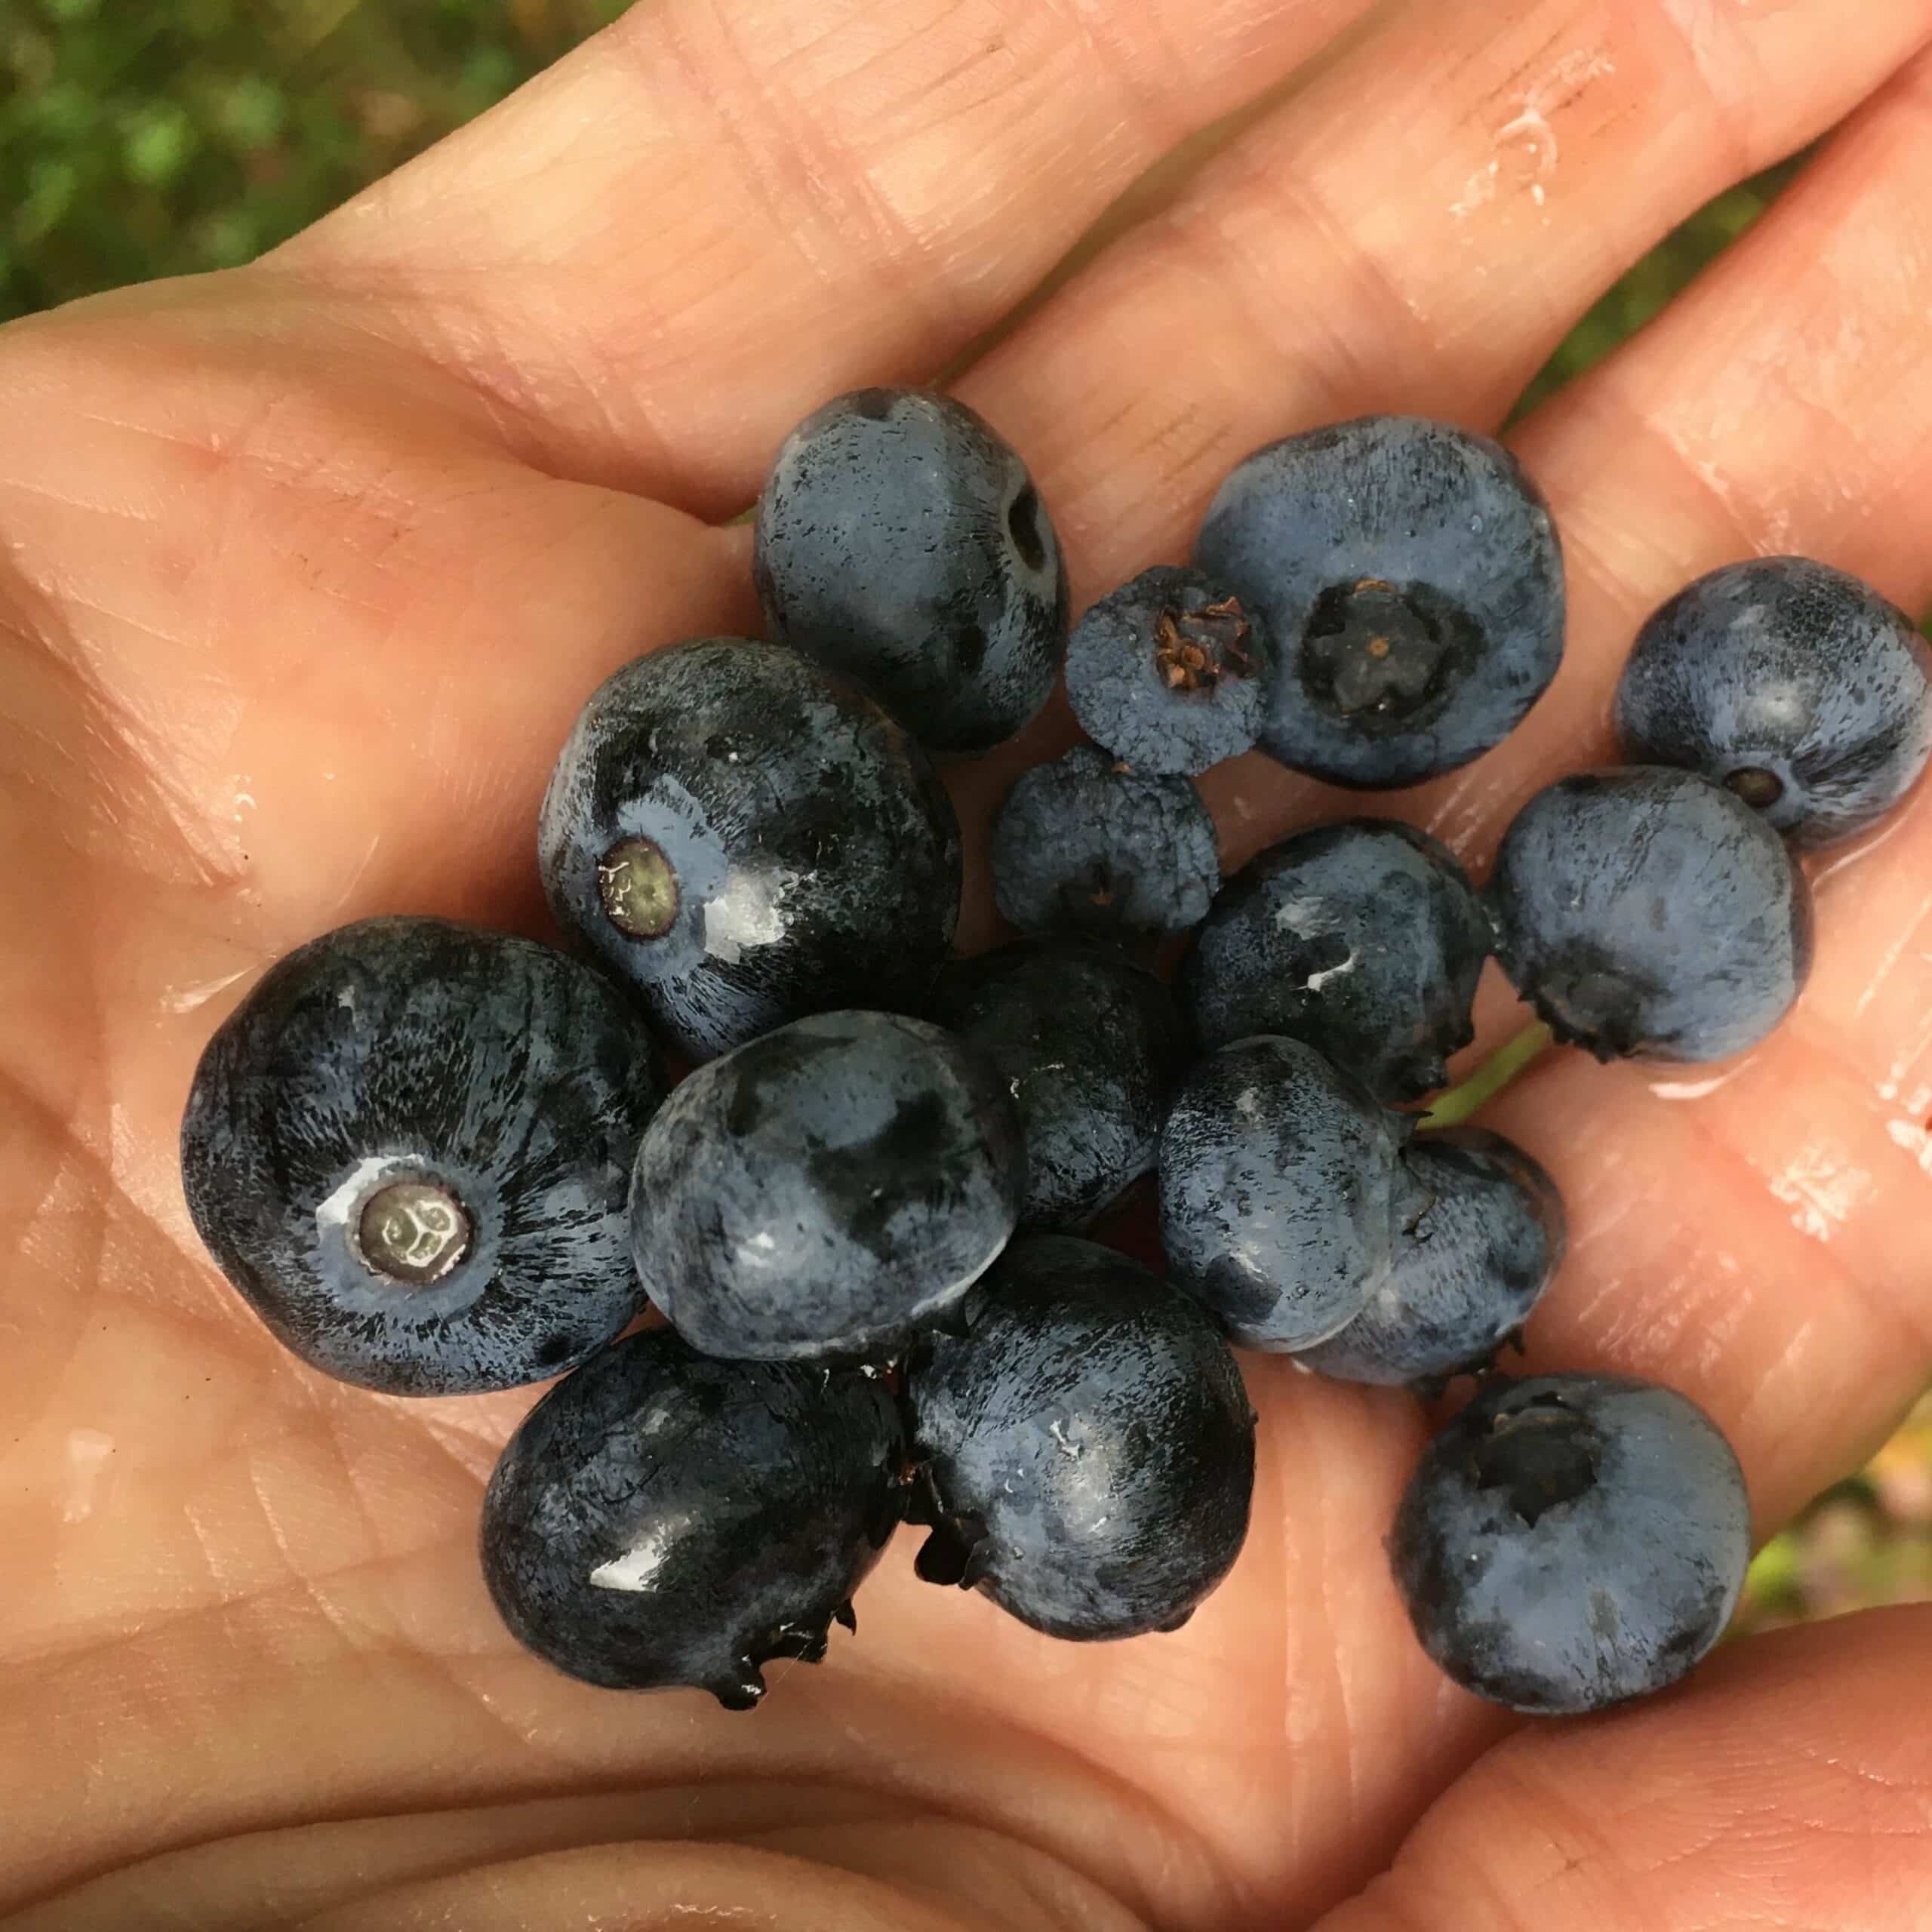 A handfuls of fresh blueberries.